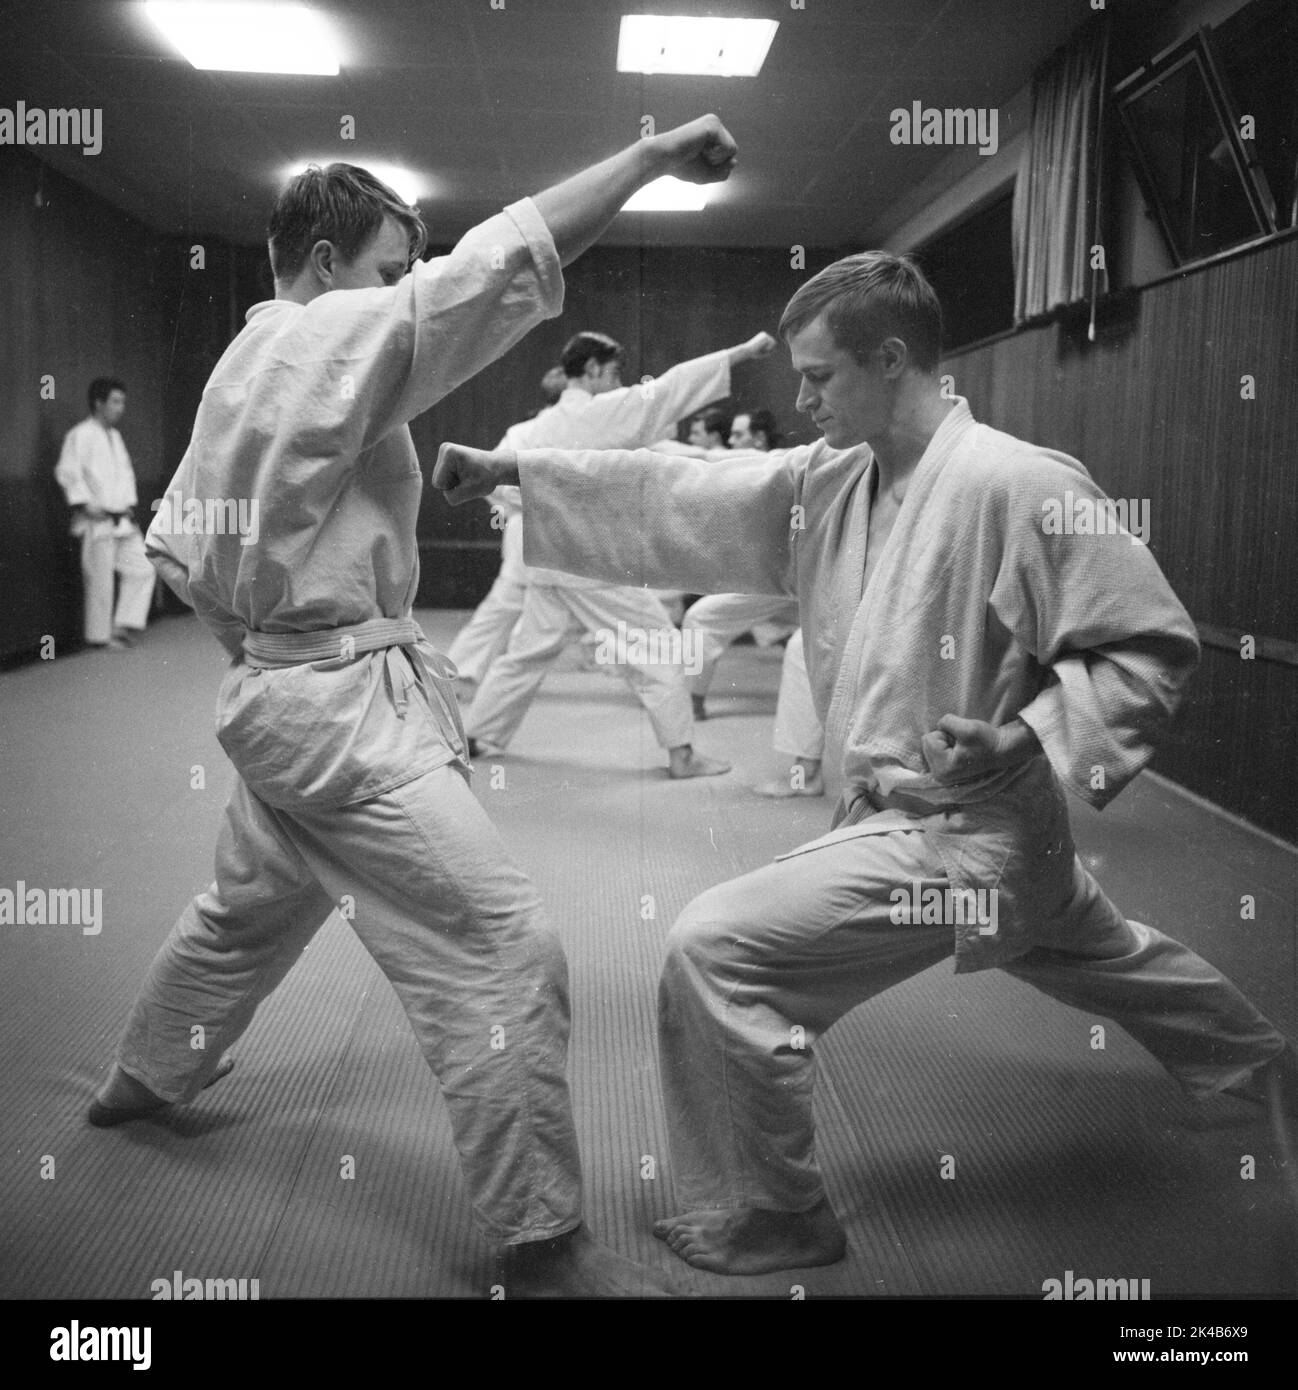 L'arte marziale del karate è stata insegnata in questa scuola di karate nella regione della Ruhr nel 1966, in Germania Foto Stock